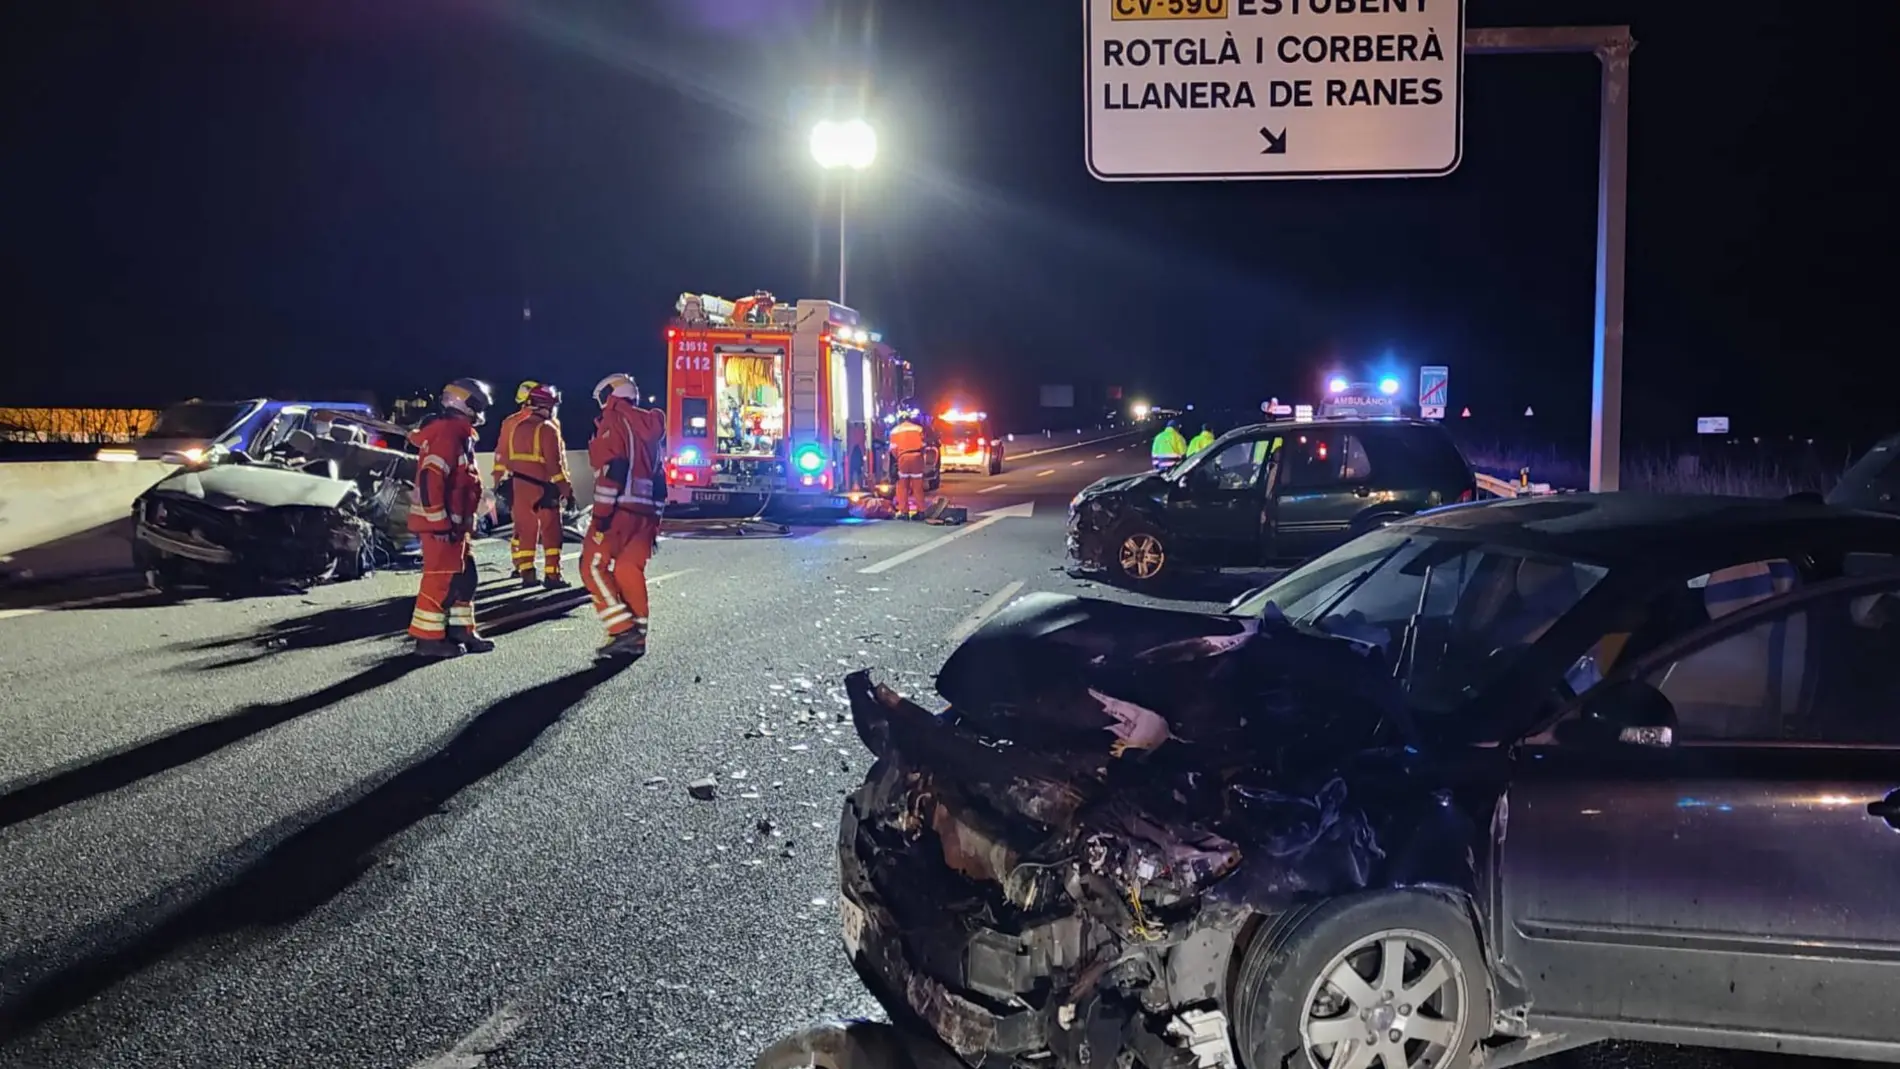 Las cuatro personas que resultaron heridas de diversa consideración en el accidente múltiple ocurrido anoche en Rotjà i Corberà